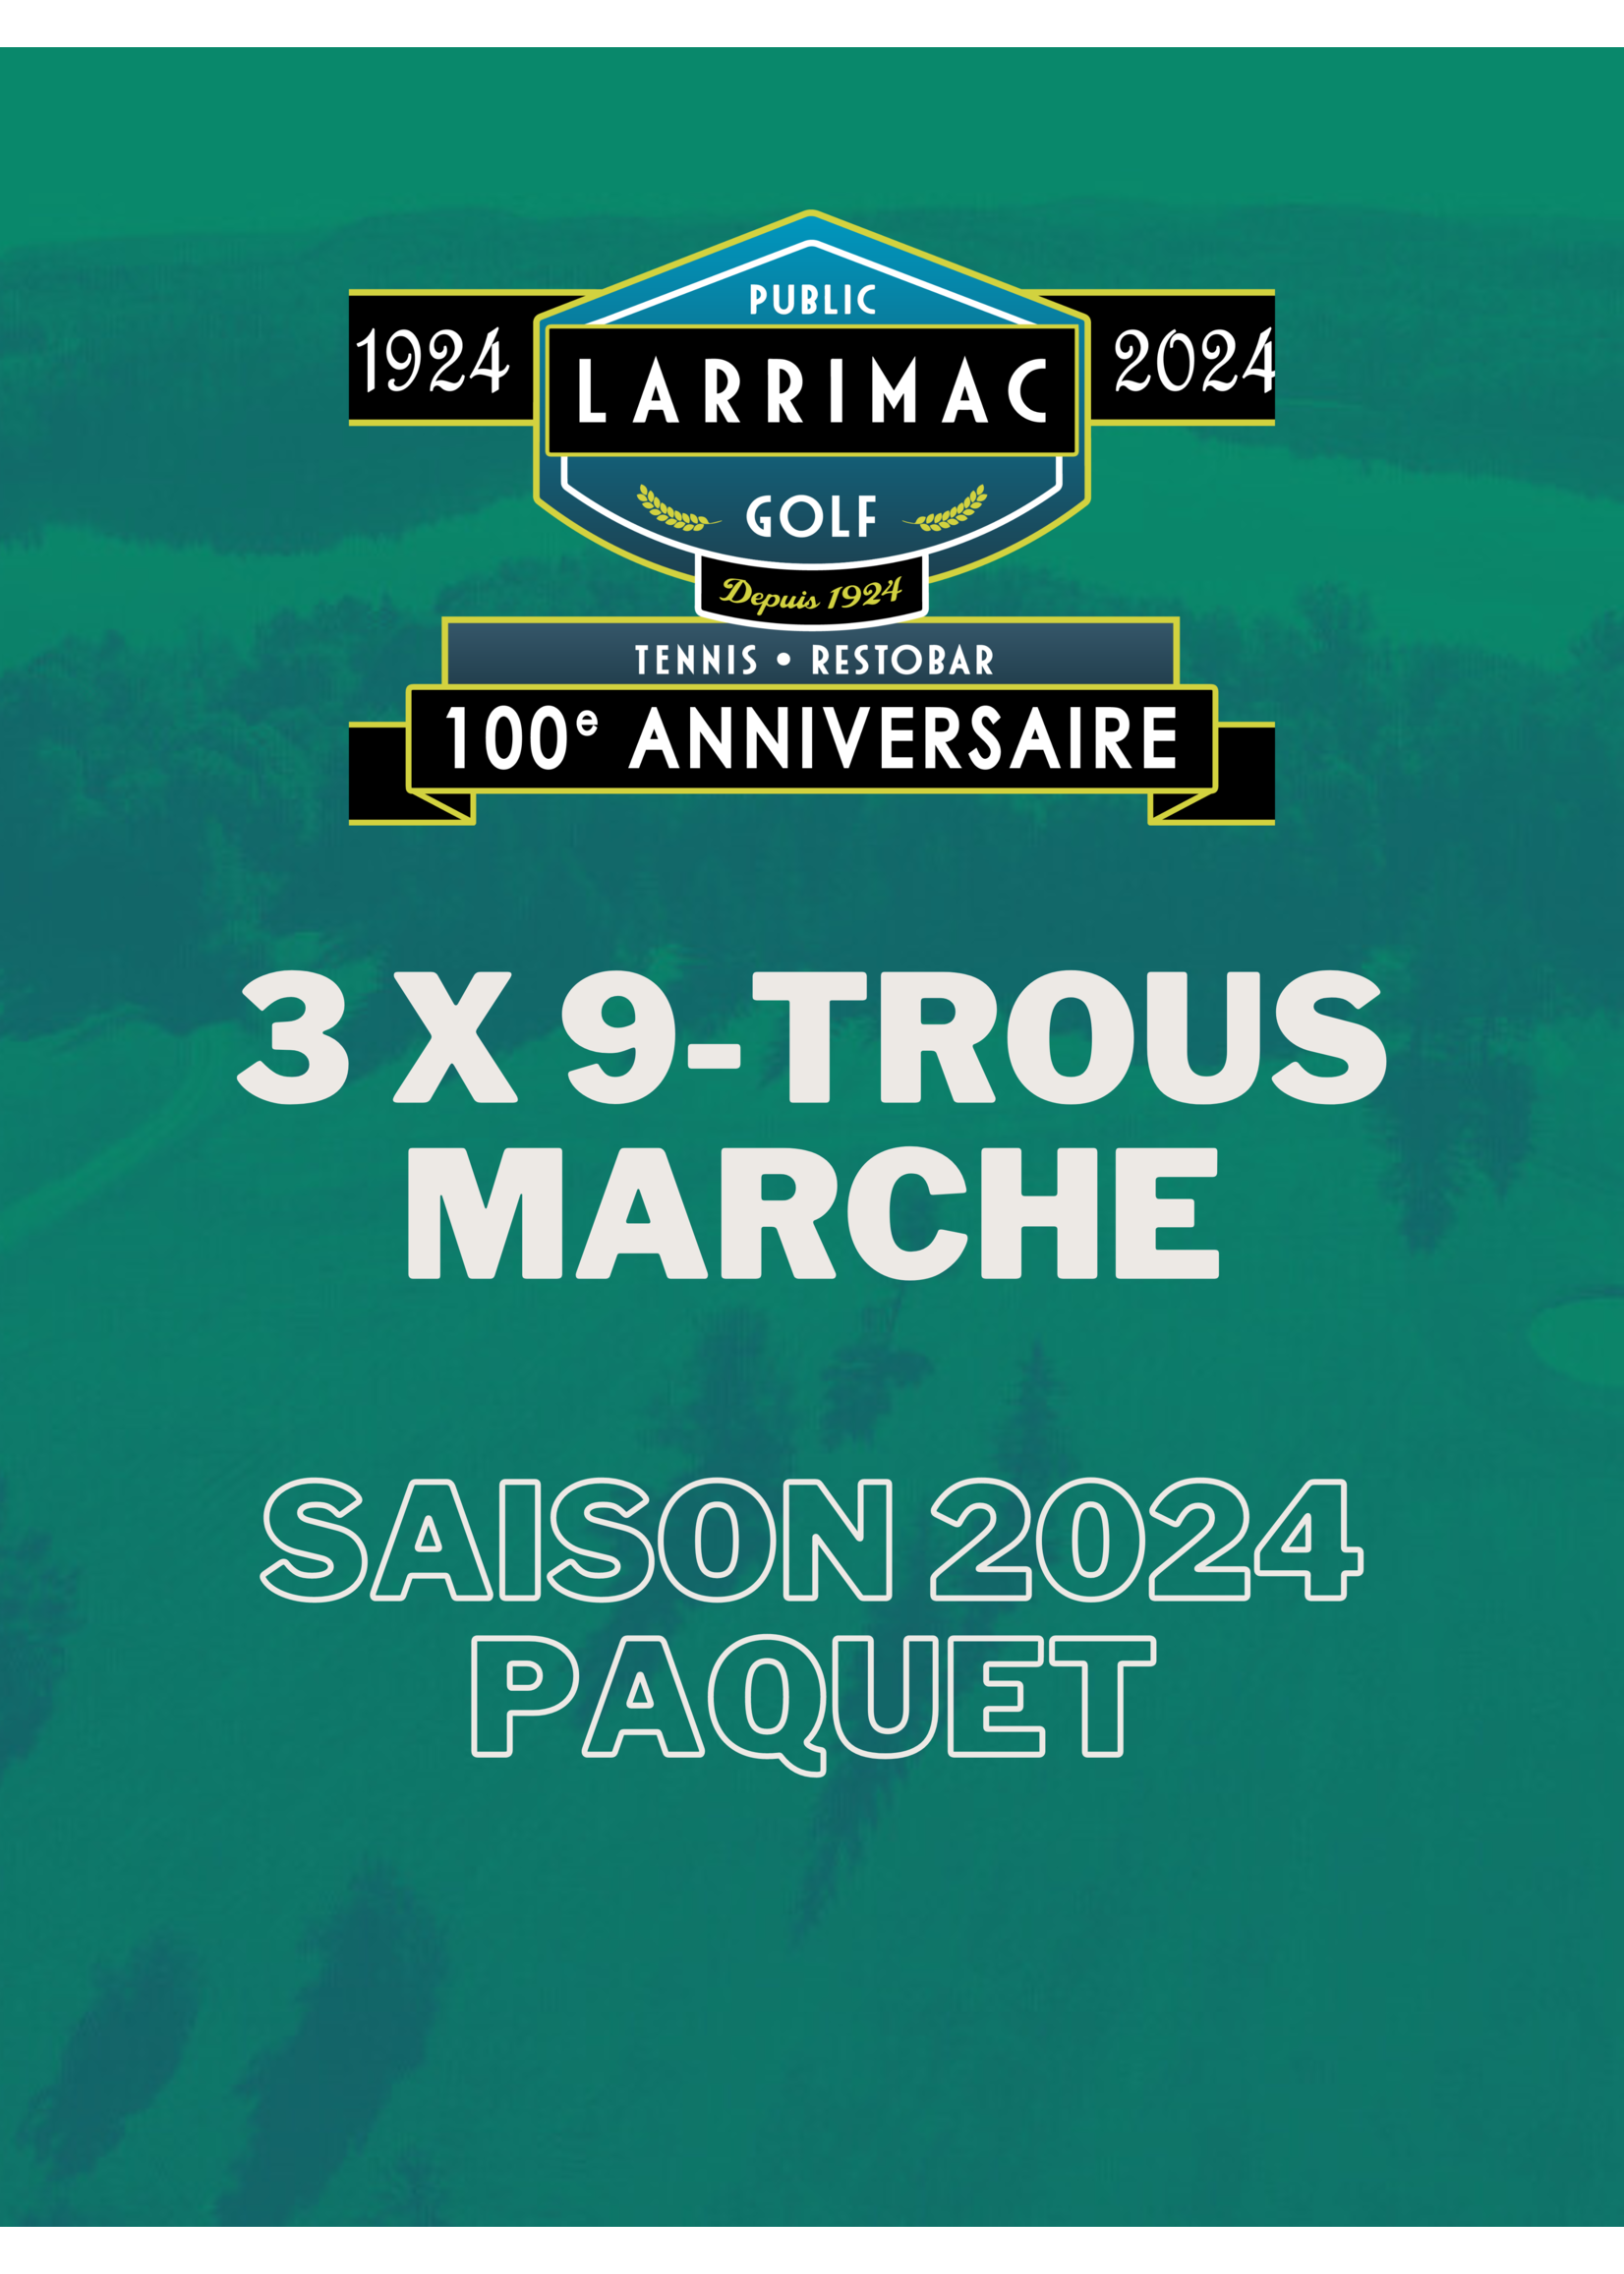 2024 packages 3x 9 Trous Marche Paquet (Saison 2024 5% de réduction !)